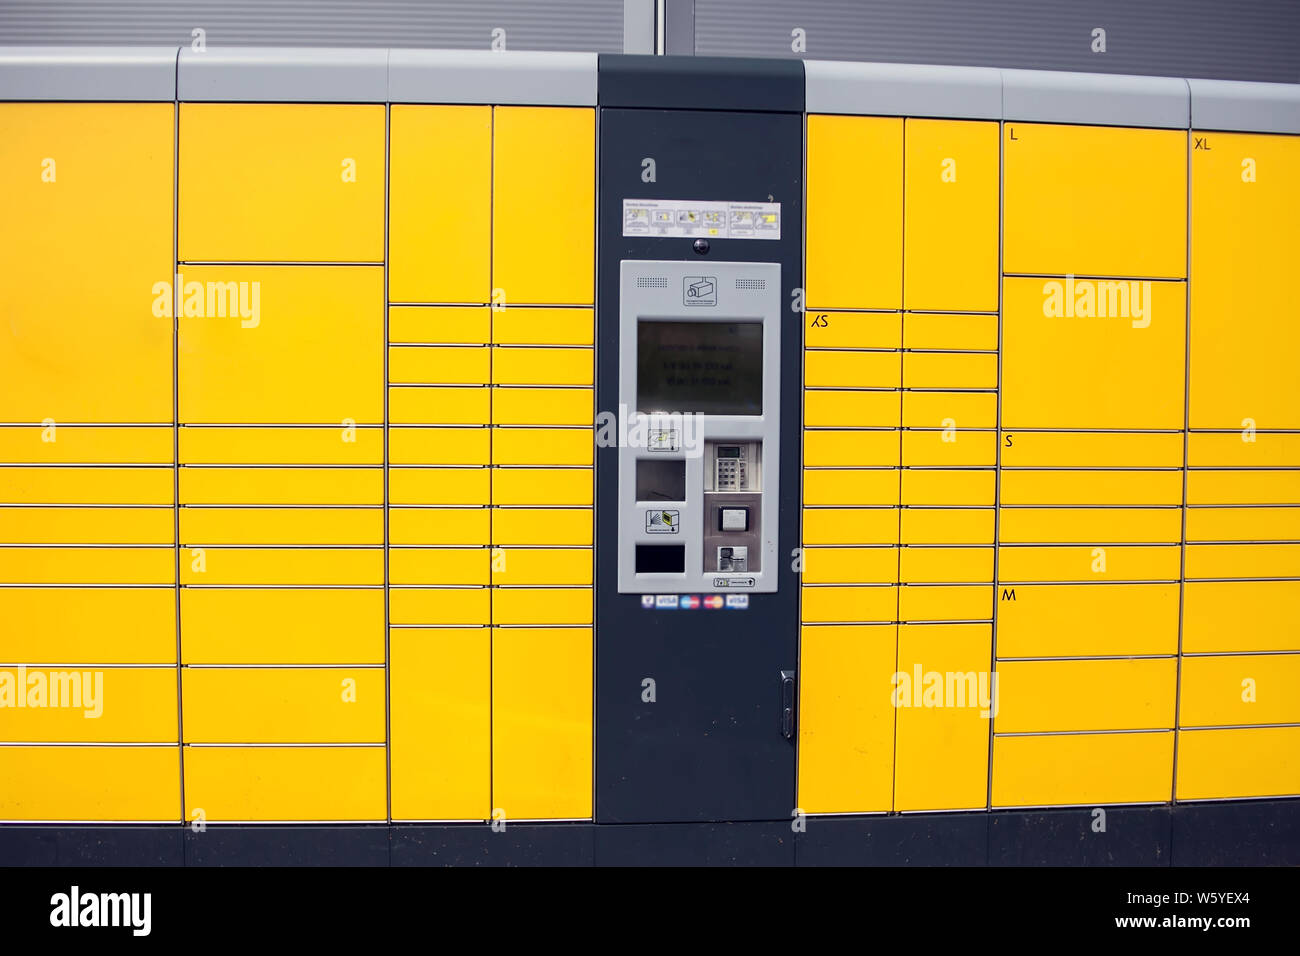 Automatisierte gelb self service Post terminal Maschine oder Schließfach  ein Paket für die Lagerung zu hinterlegen Stockfotografie - Alamy